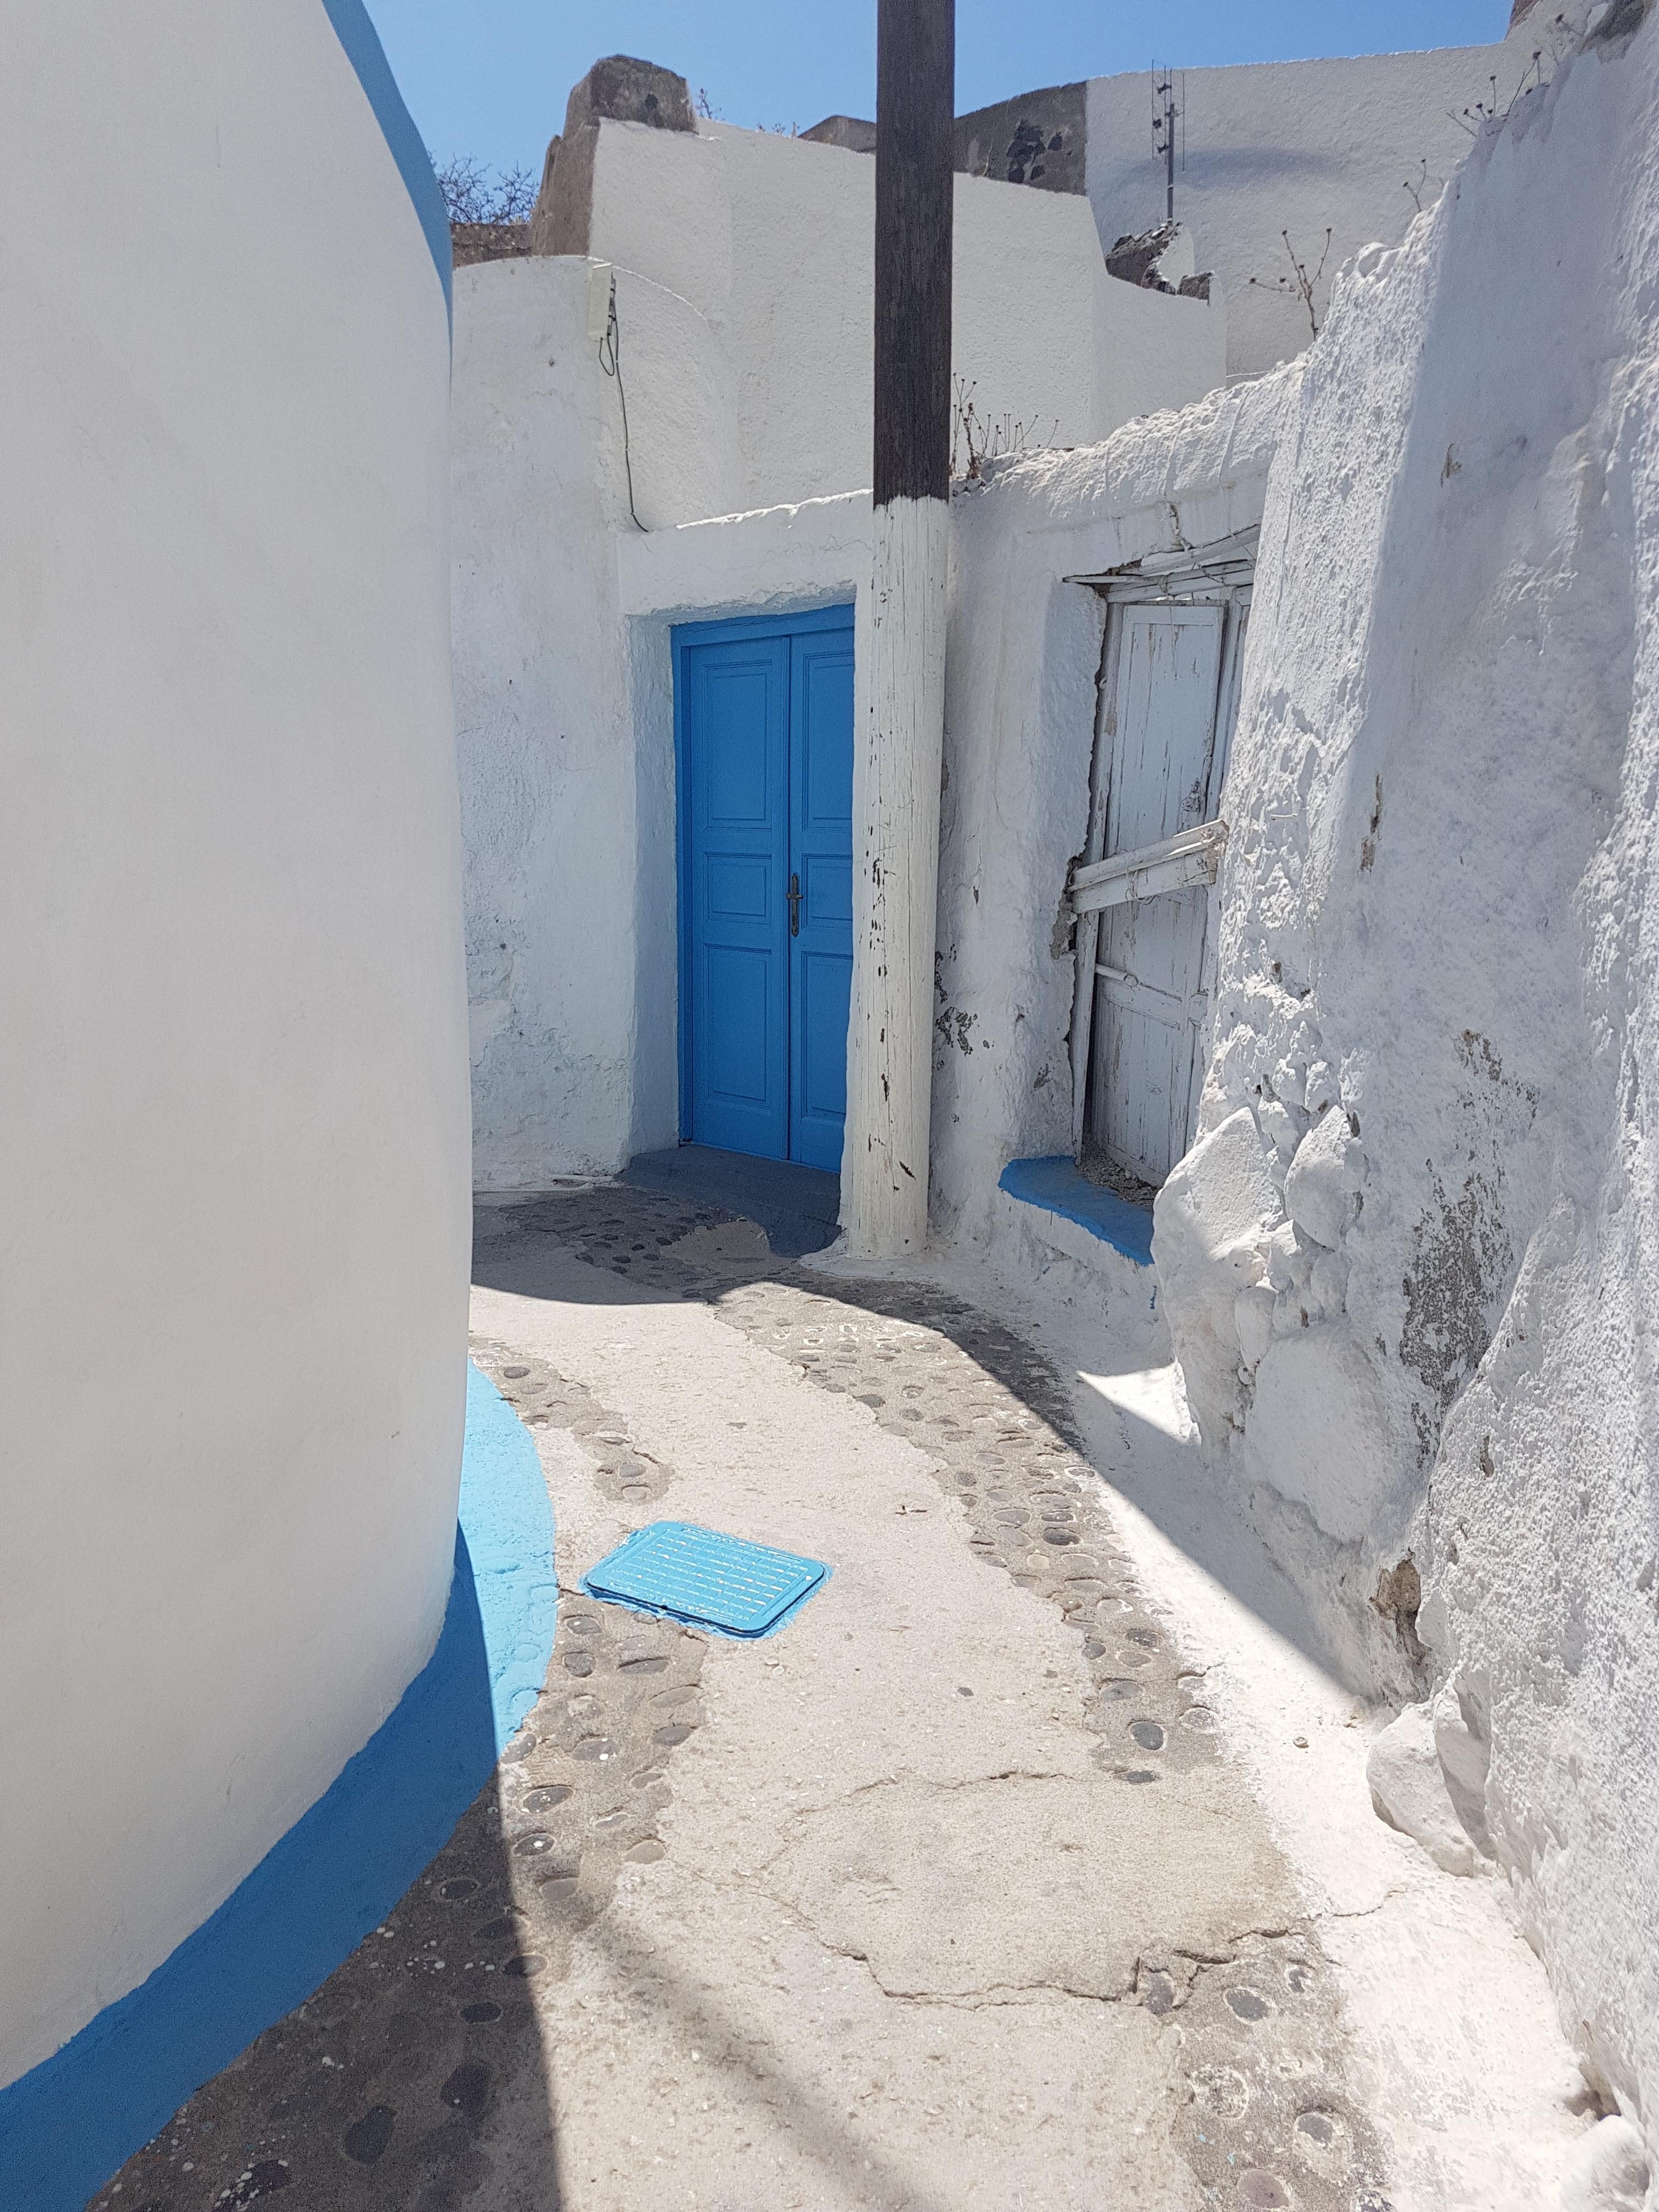 Sehnsucht nach #Griechenland....
...vielleicht sollte ich die Wohnung #blau und #weiß streichen? 🤔